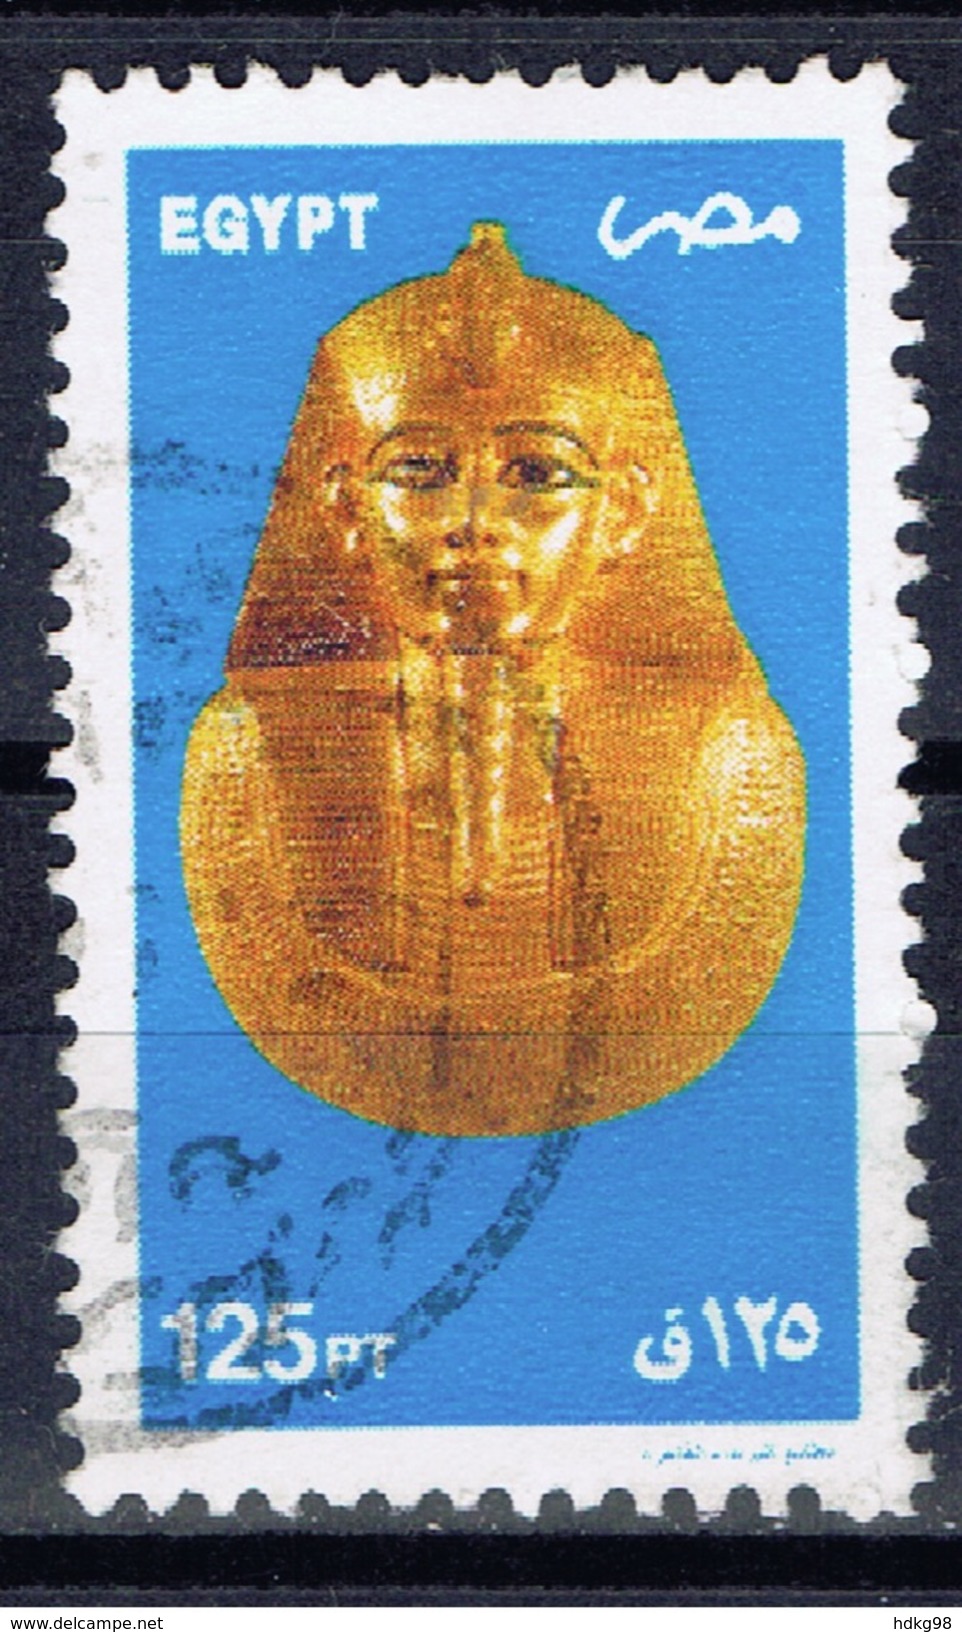 ET+ Ägypten 2002 Mi 1562-63 Psusennes I., Tutenchamun - Usati